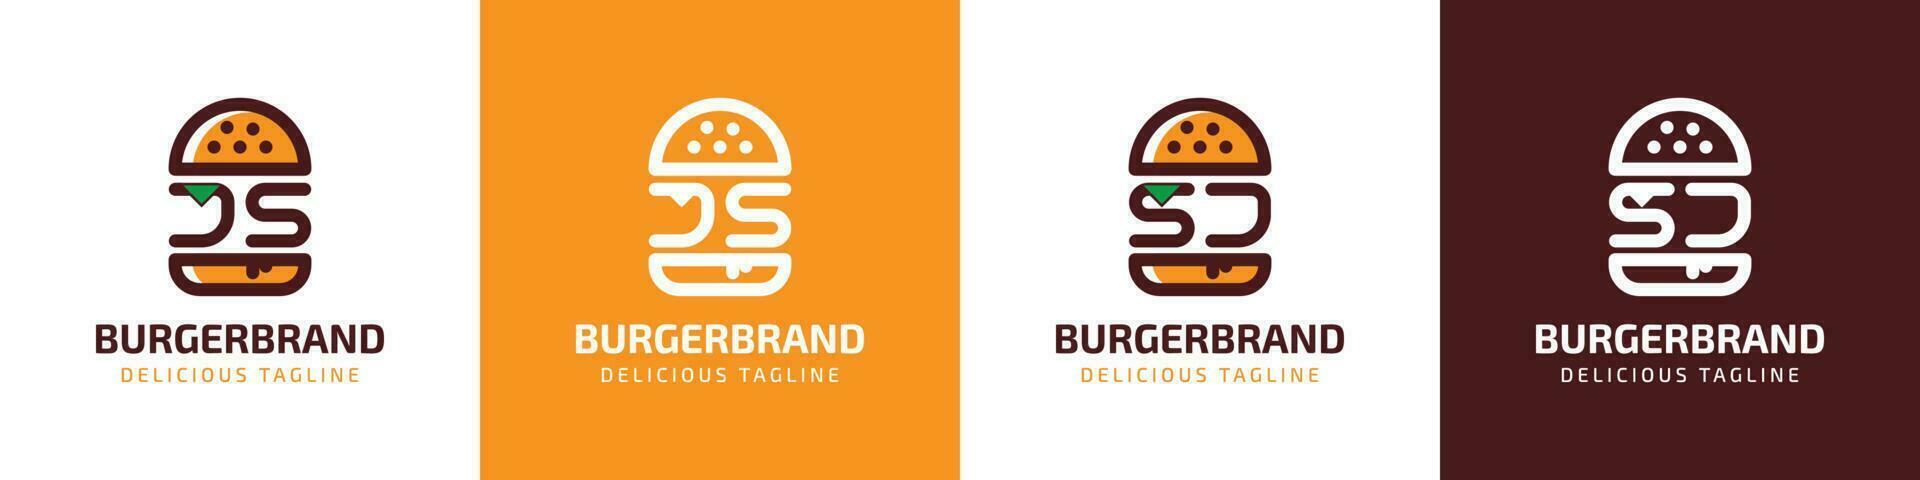 letra js y sj hamburguesa logo, adecuado para ninguna negocio relacionado a hamburguesa con js o sj iniciales. vector